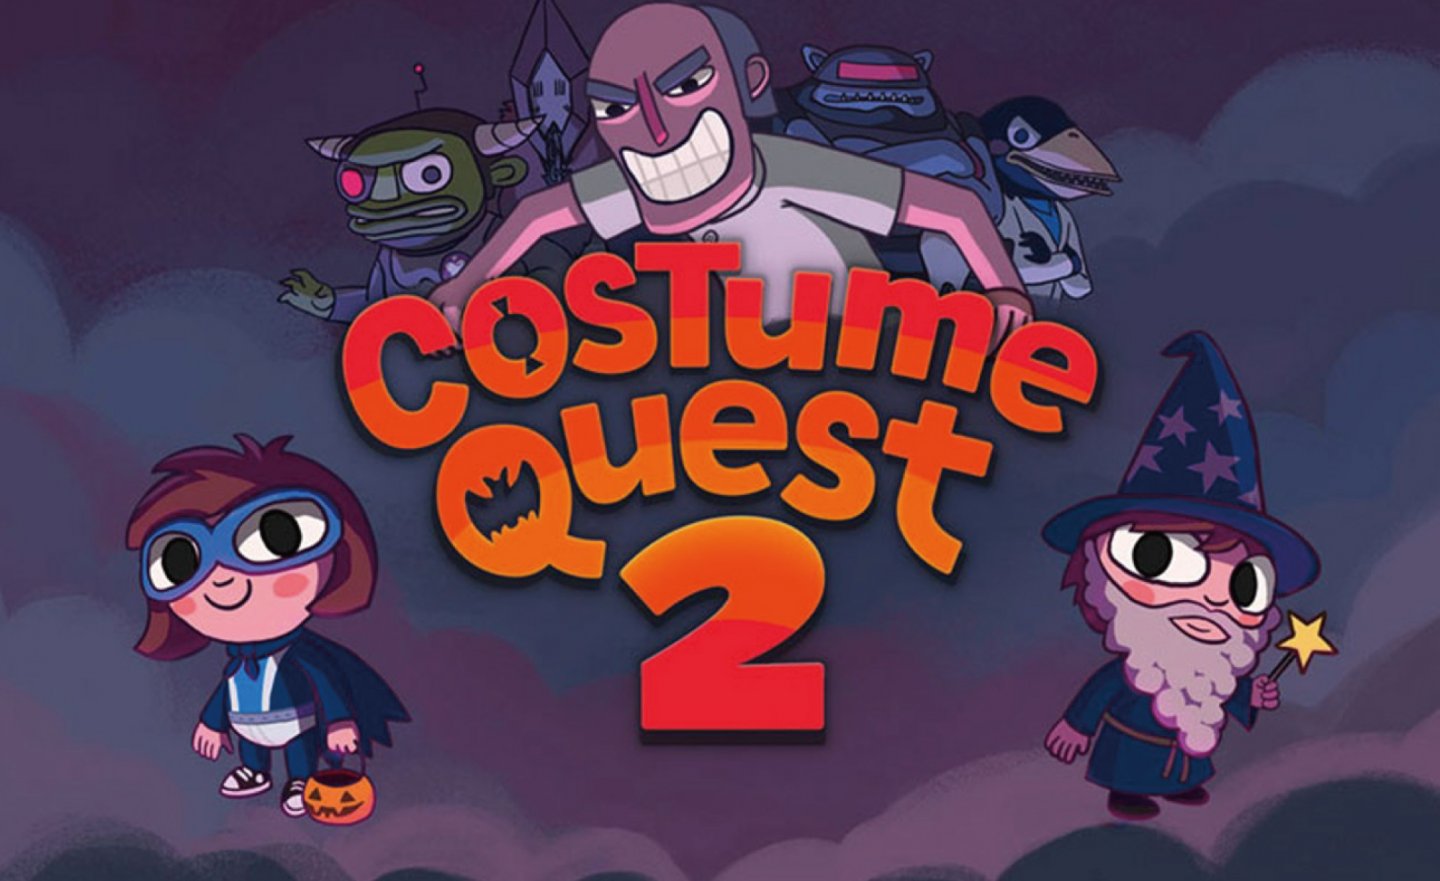 【限時免費】24 小時限定放送《Costume Quest 2》，2022 年 12 月 19 日 00:00 截止